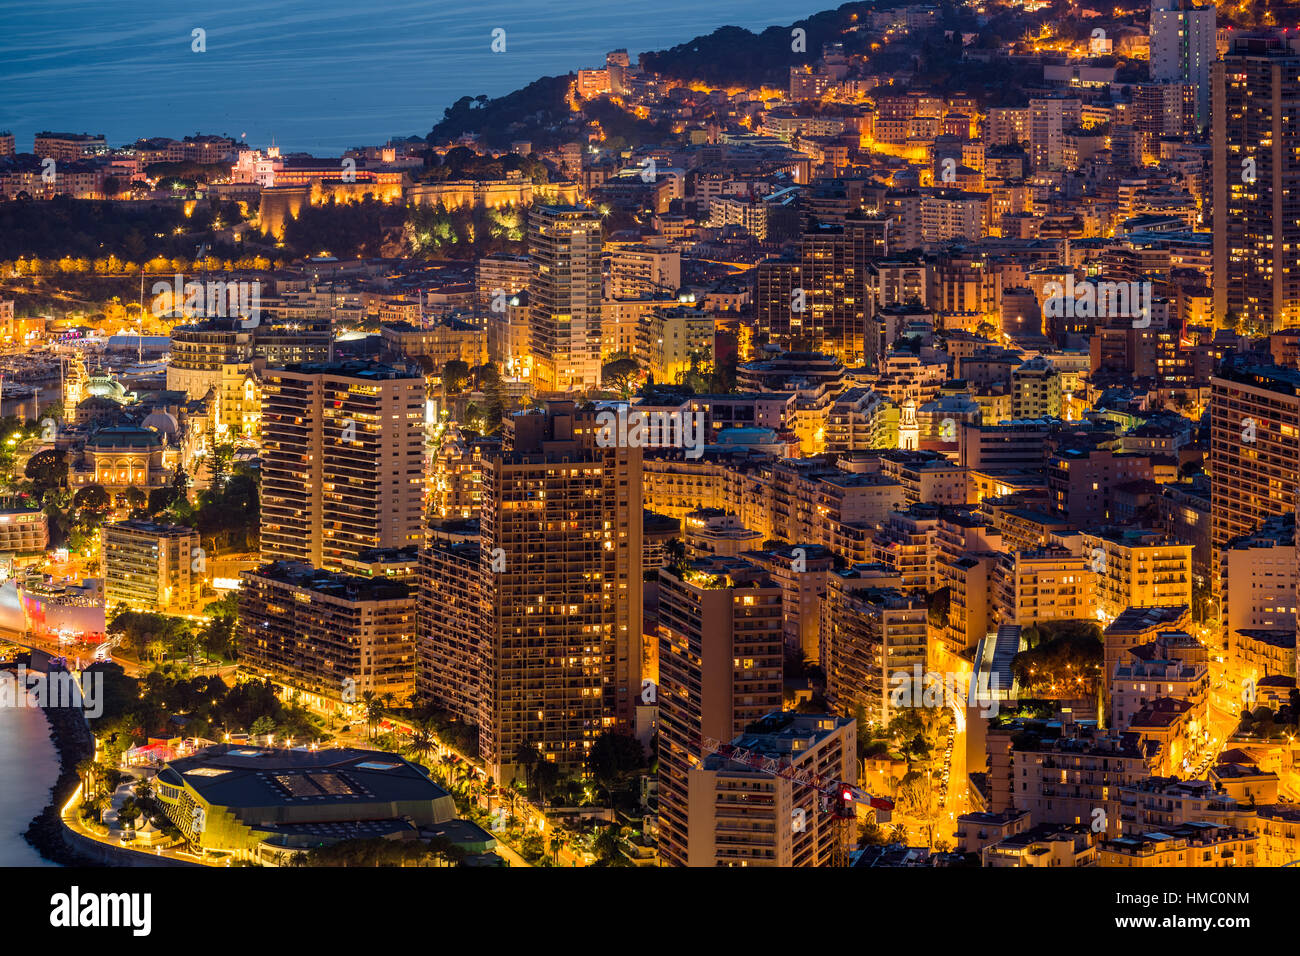 Monaco, Monte-Carlo, 26 Septembre 2016 : vue panoramique sur la ville nocturne de l'hôtel Vista, l'éclairage de nuit des yachts, des rues, des bâtiments Banque D'Images